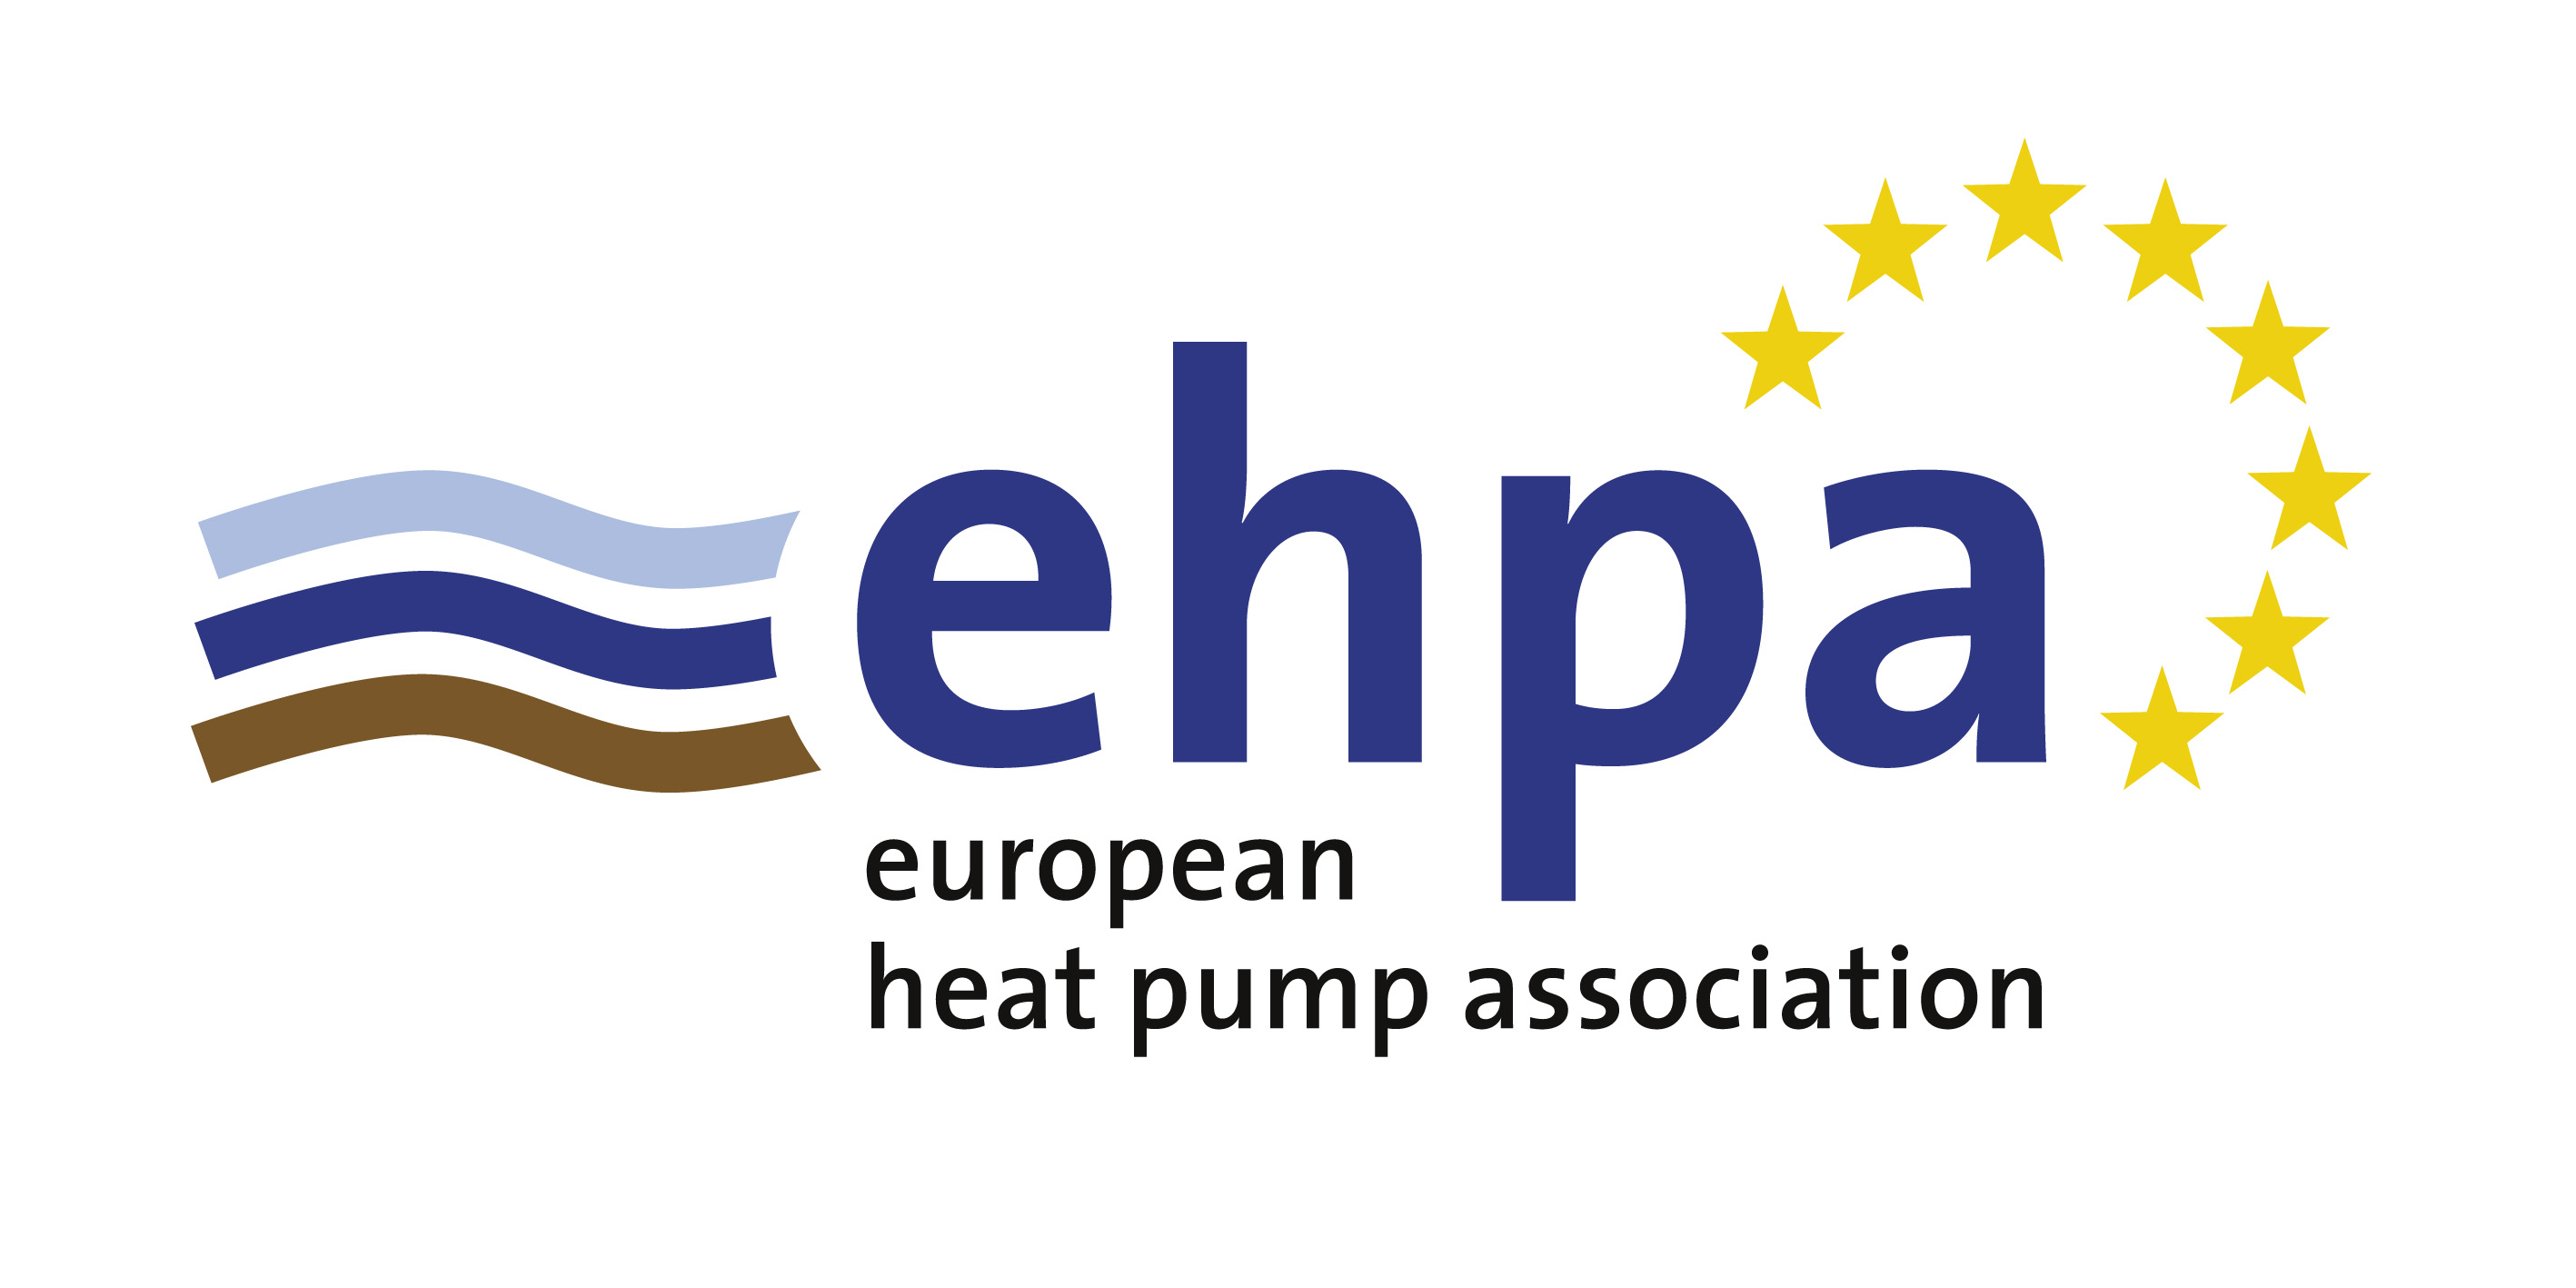 European Heat Pump Association